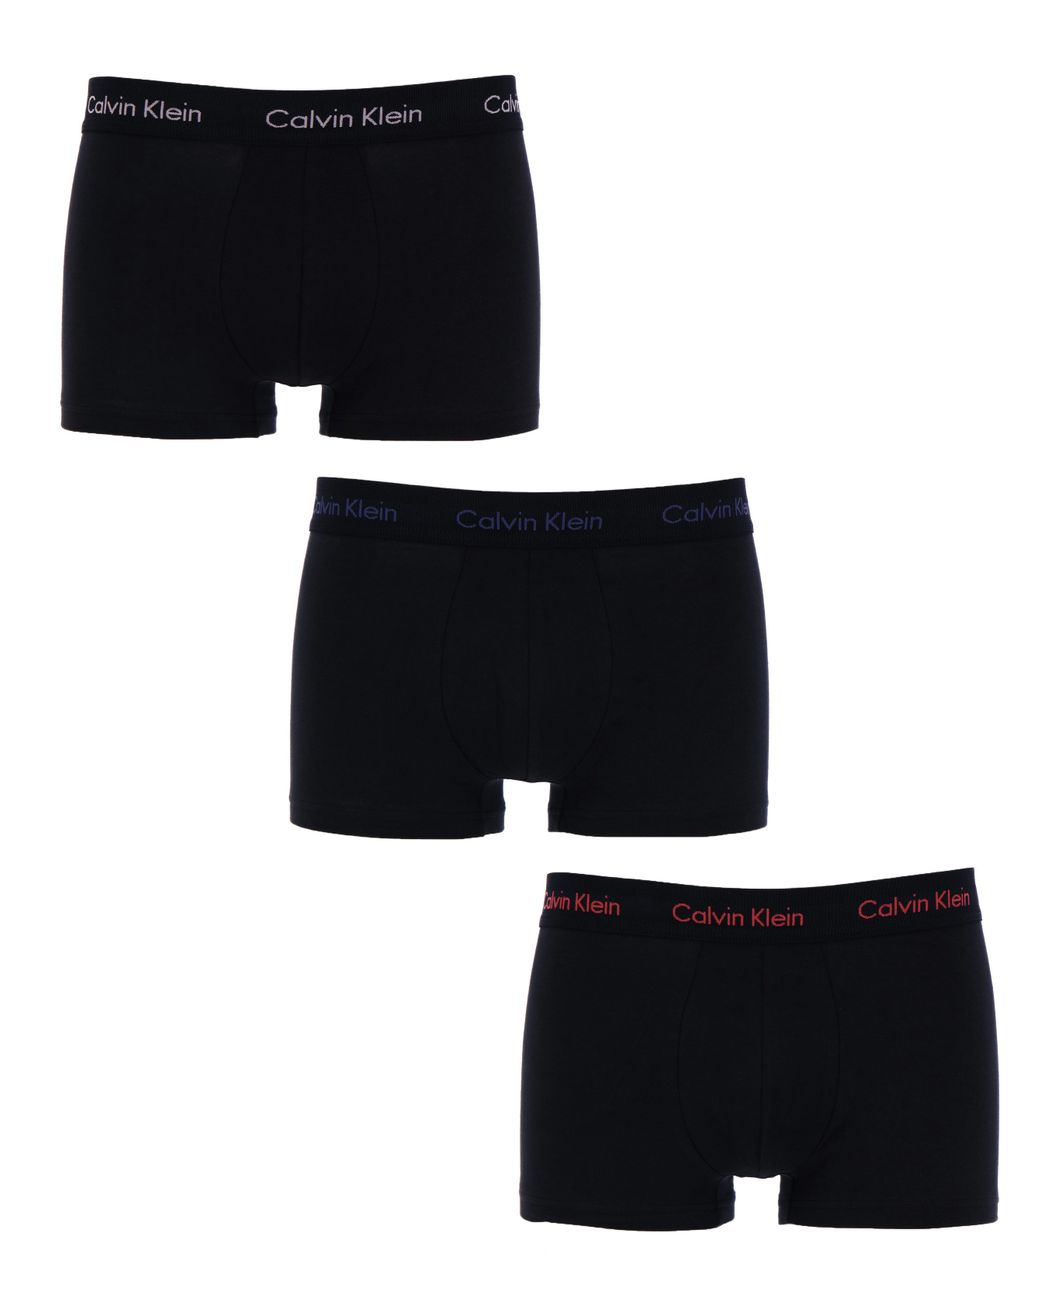 Calvin Klein Herren Boxershorts Vorteilspack 2er 3er Pack - Calvin Klein - SAGATOO - 8719115625009